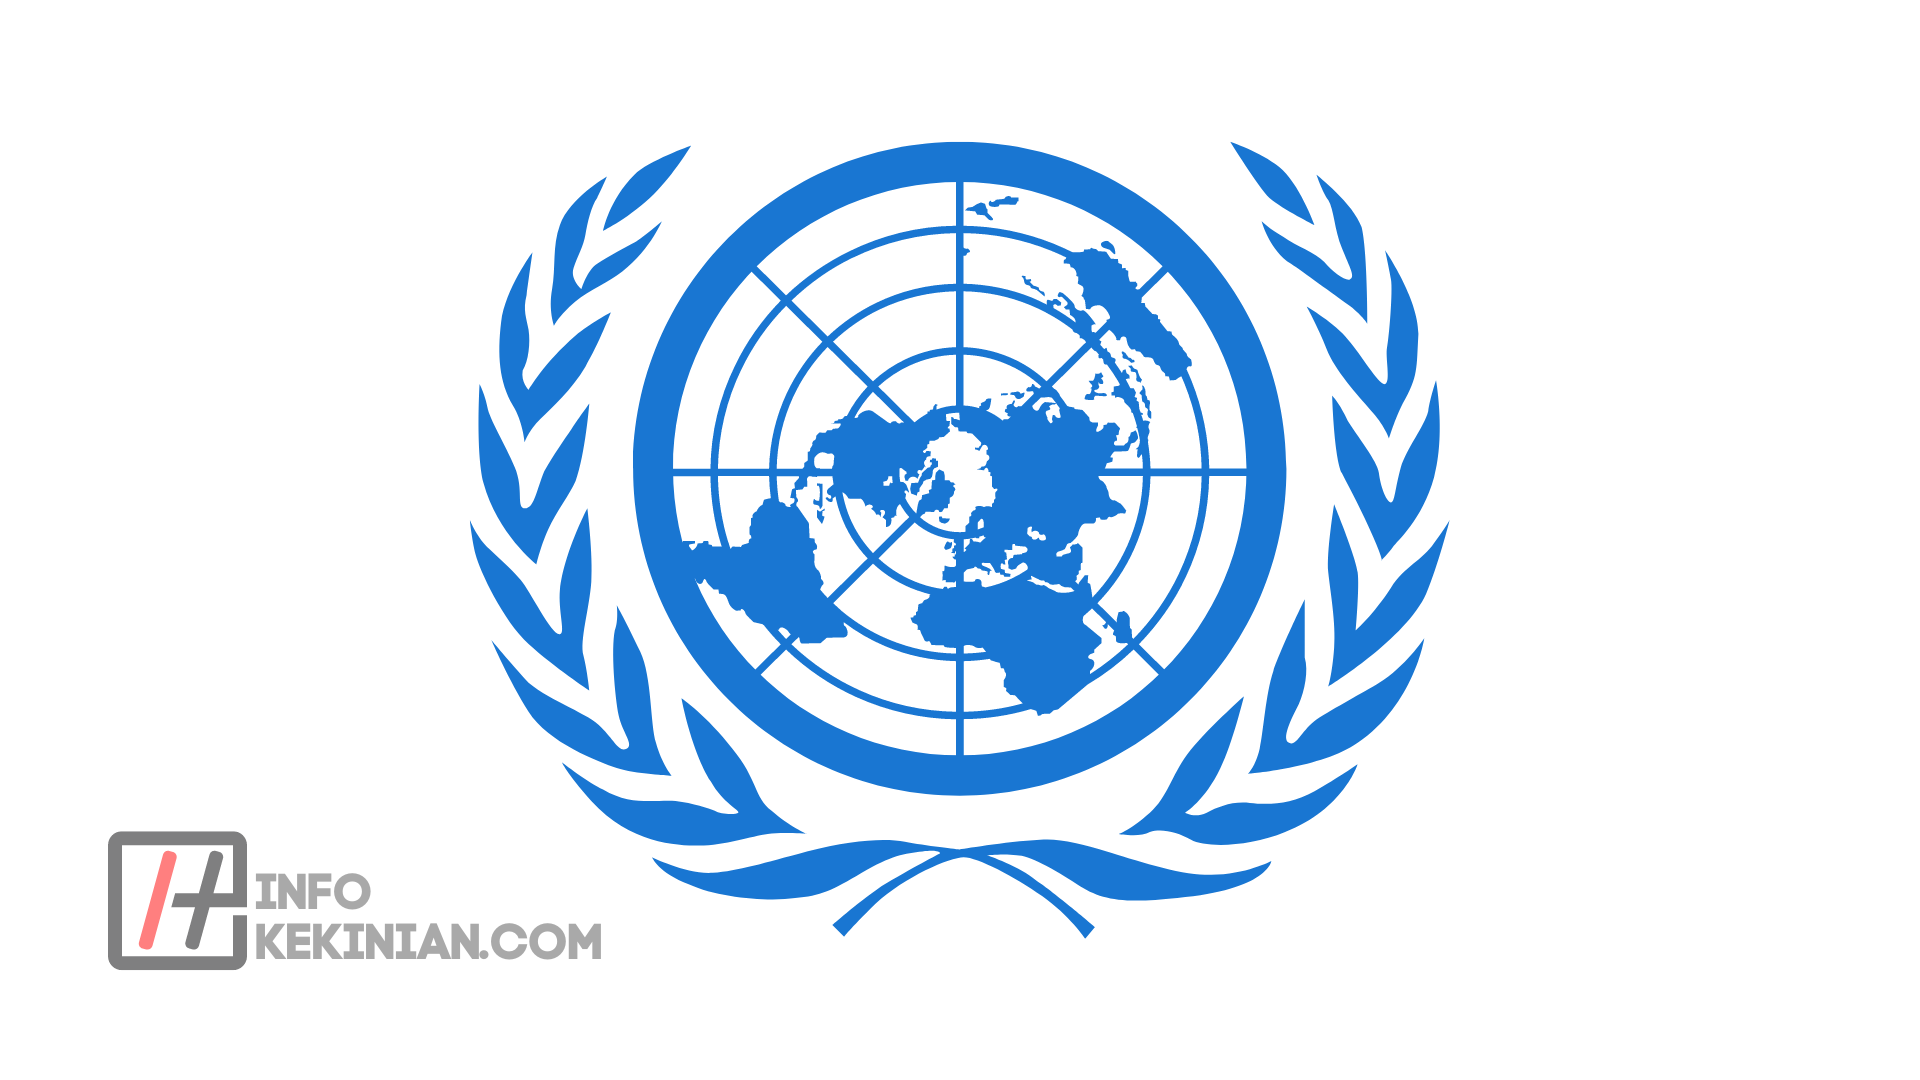 United world nation. Всемирная метеорологическая организация (ВМО). Международные организации ООН. Организация Объединенных наций (ООН). Символ ООН.